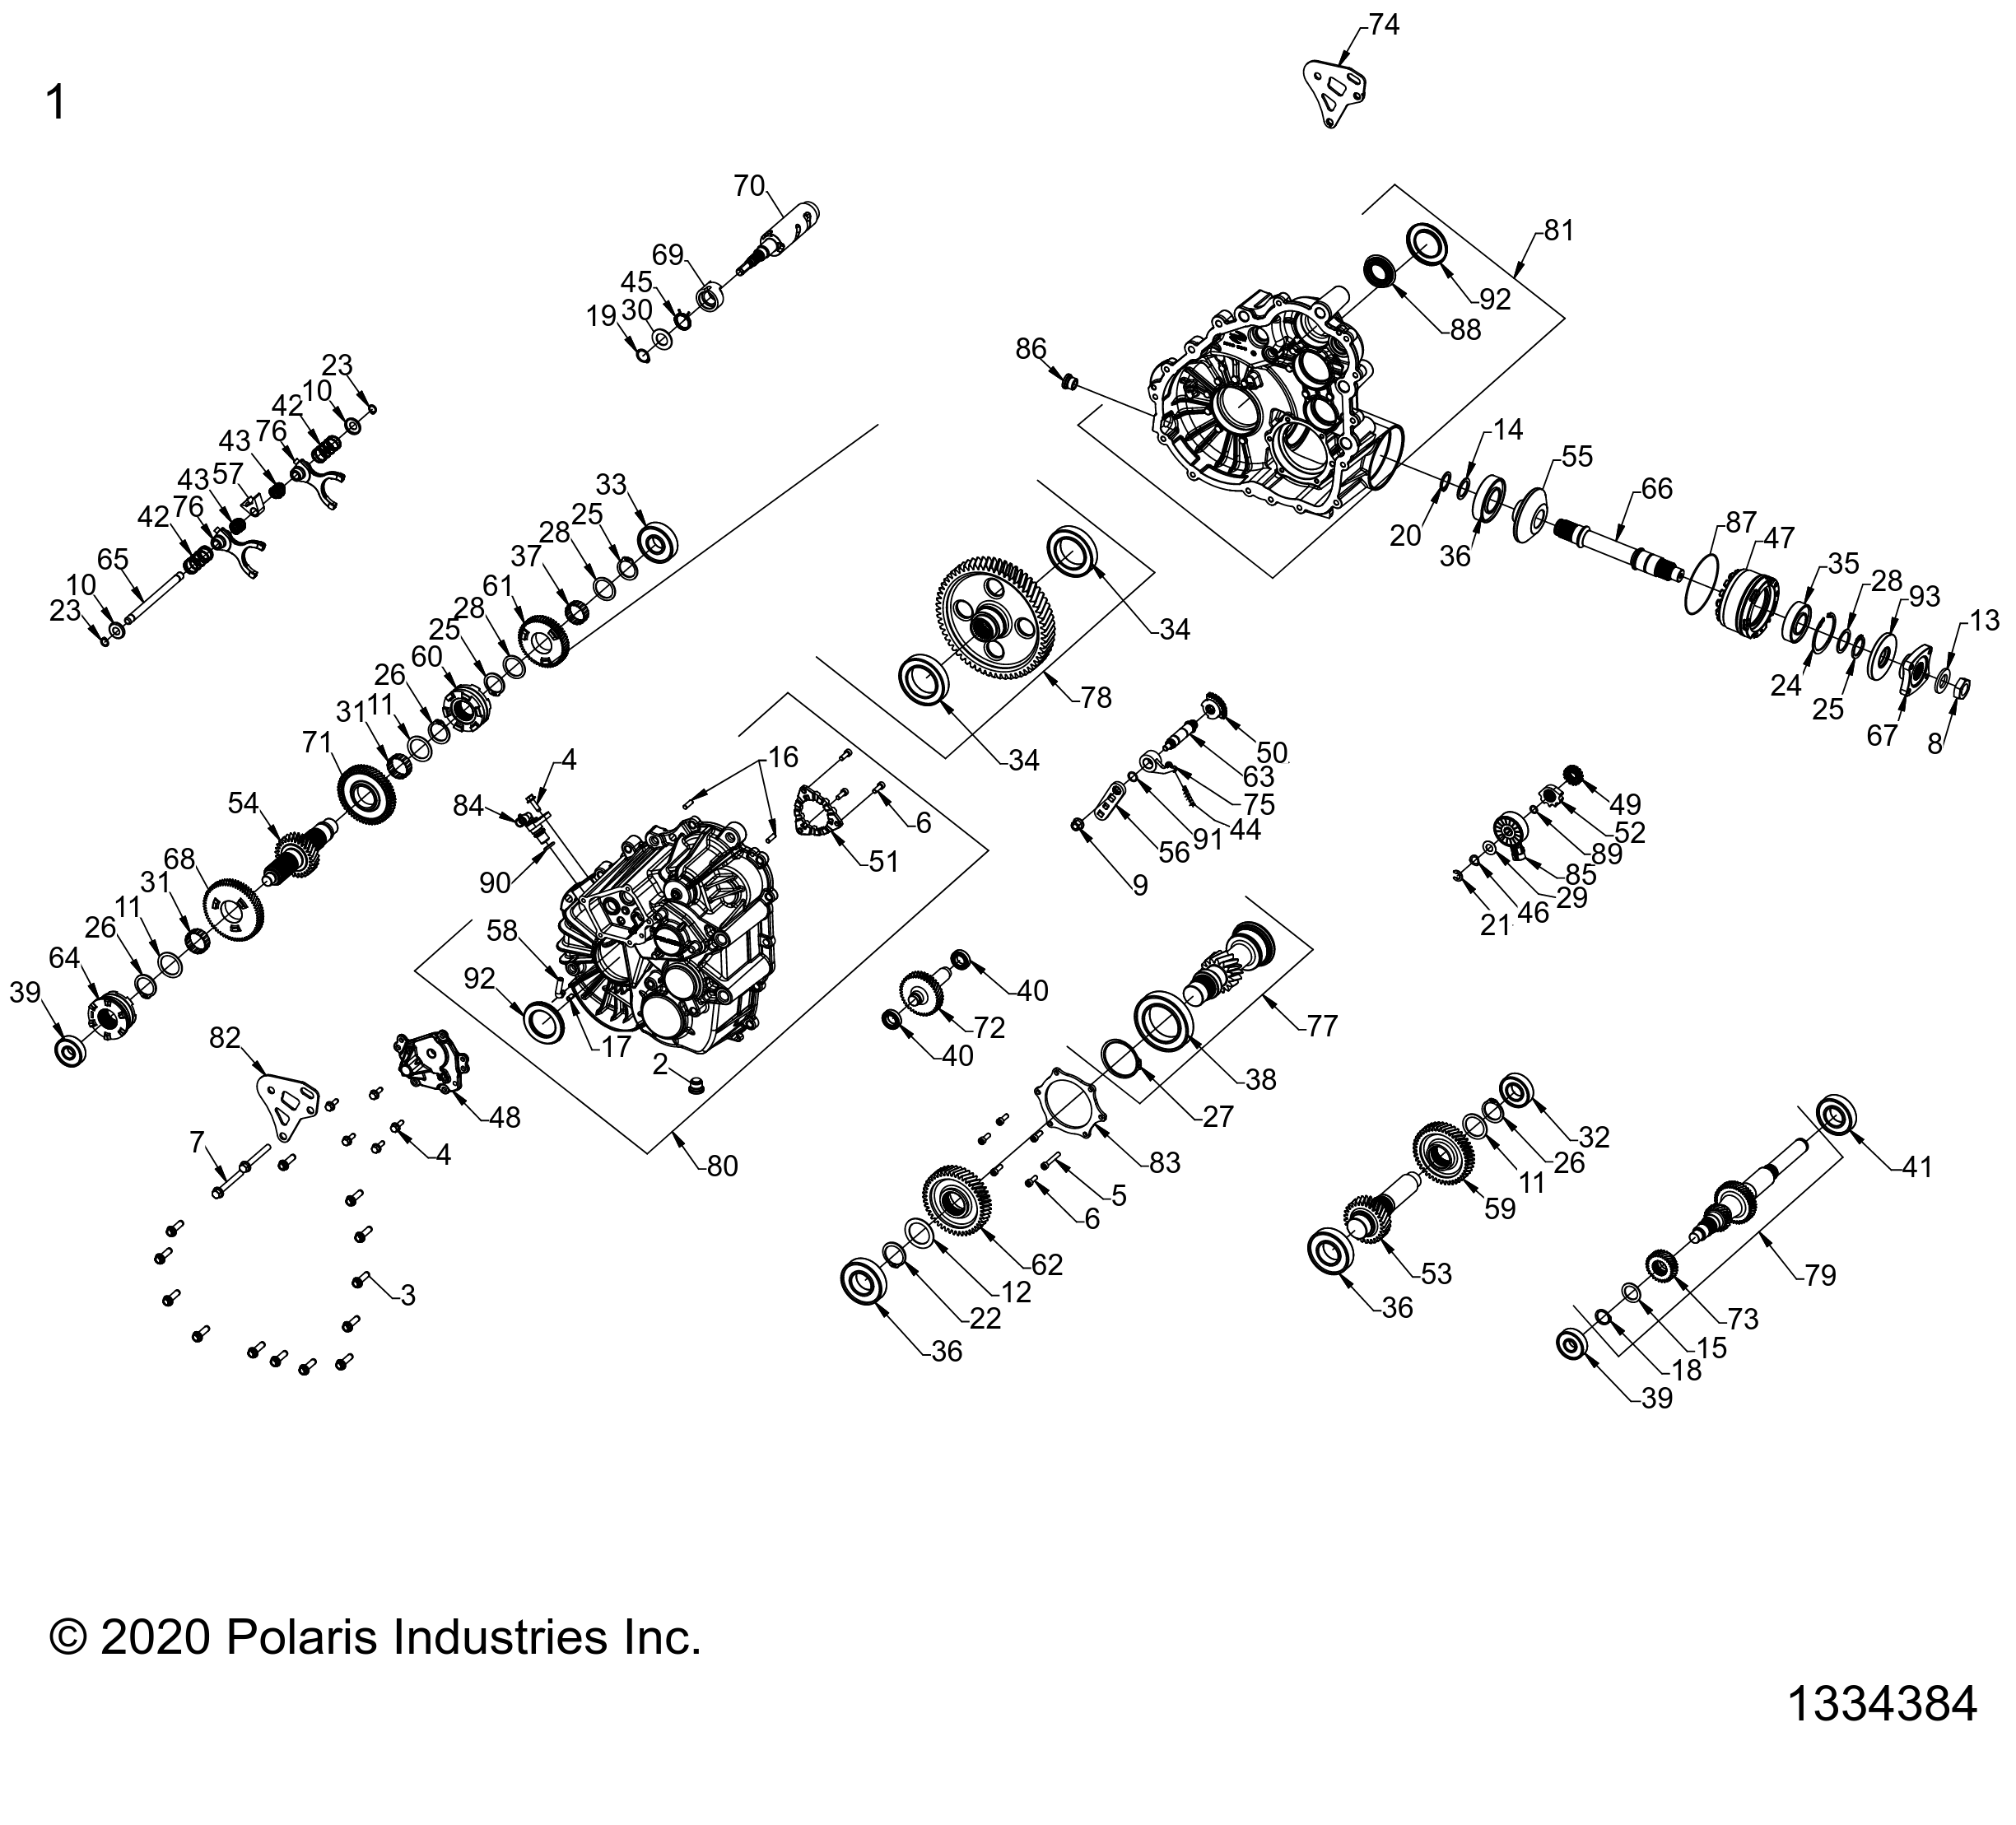 Foto diagrama Polaris que contem a peça 3235987